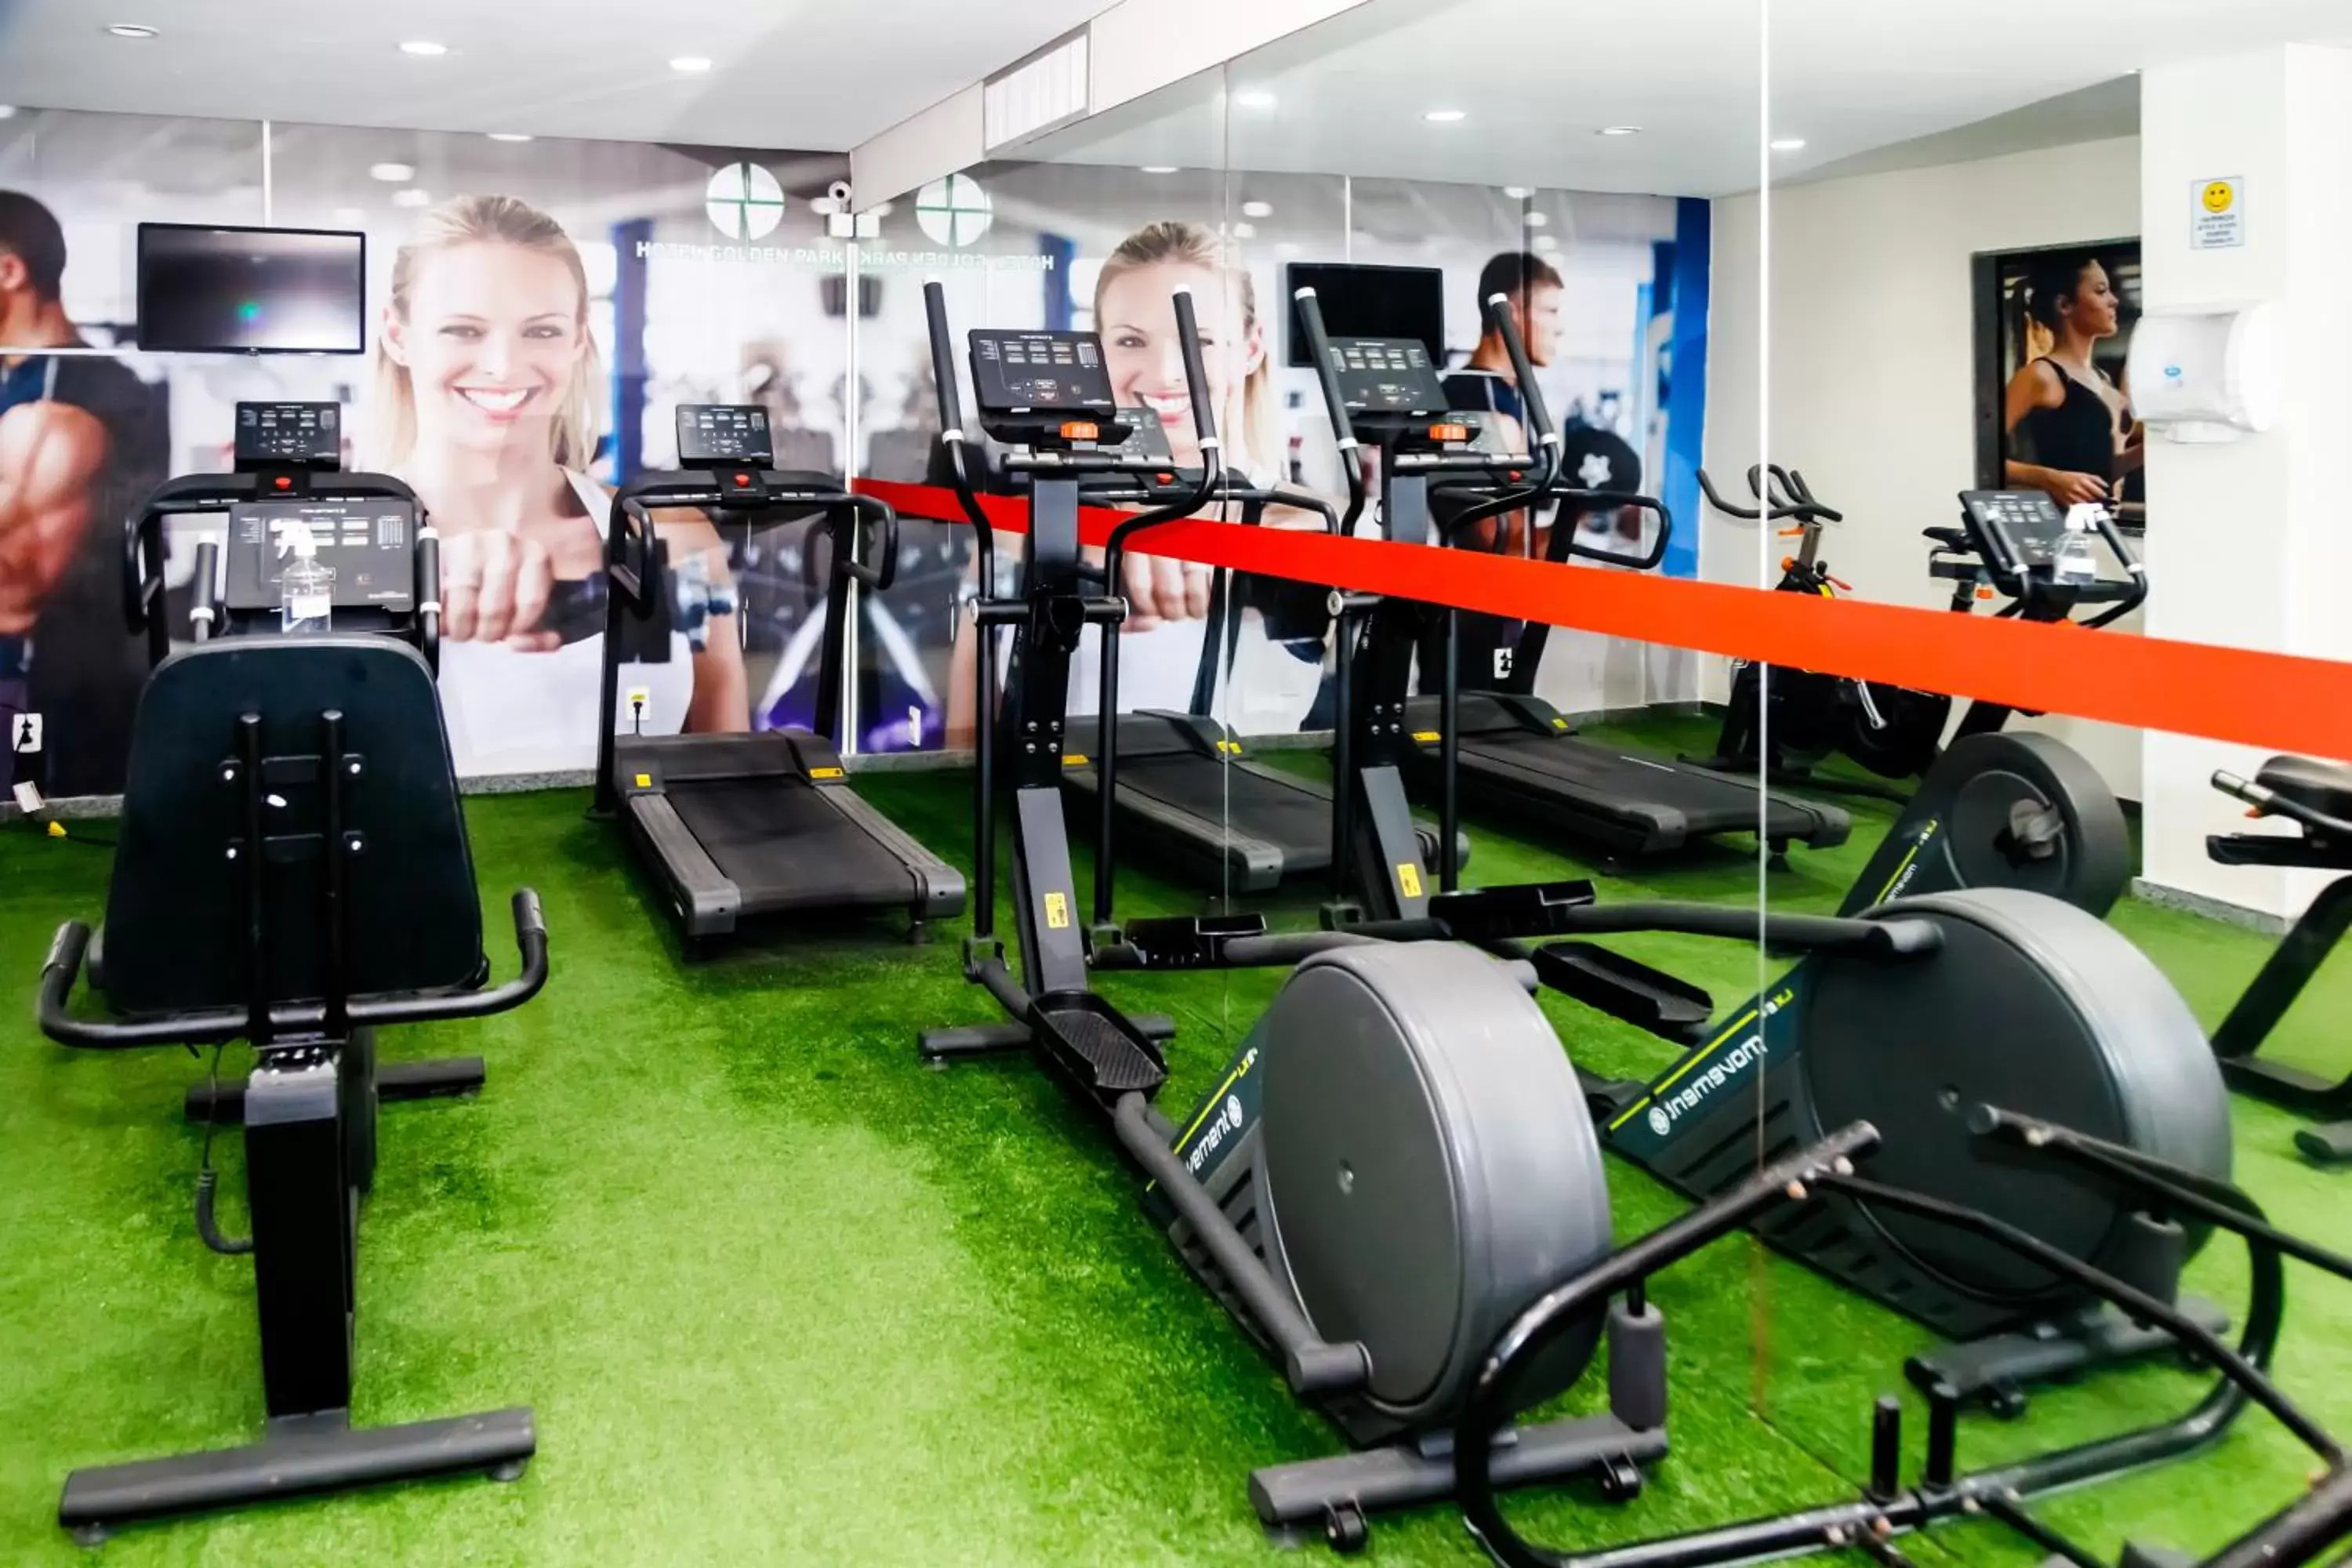 Fitness centre/facilities, Fitness Center/Facilities in Golden Park Recife Boa Viagem